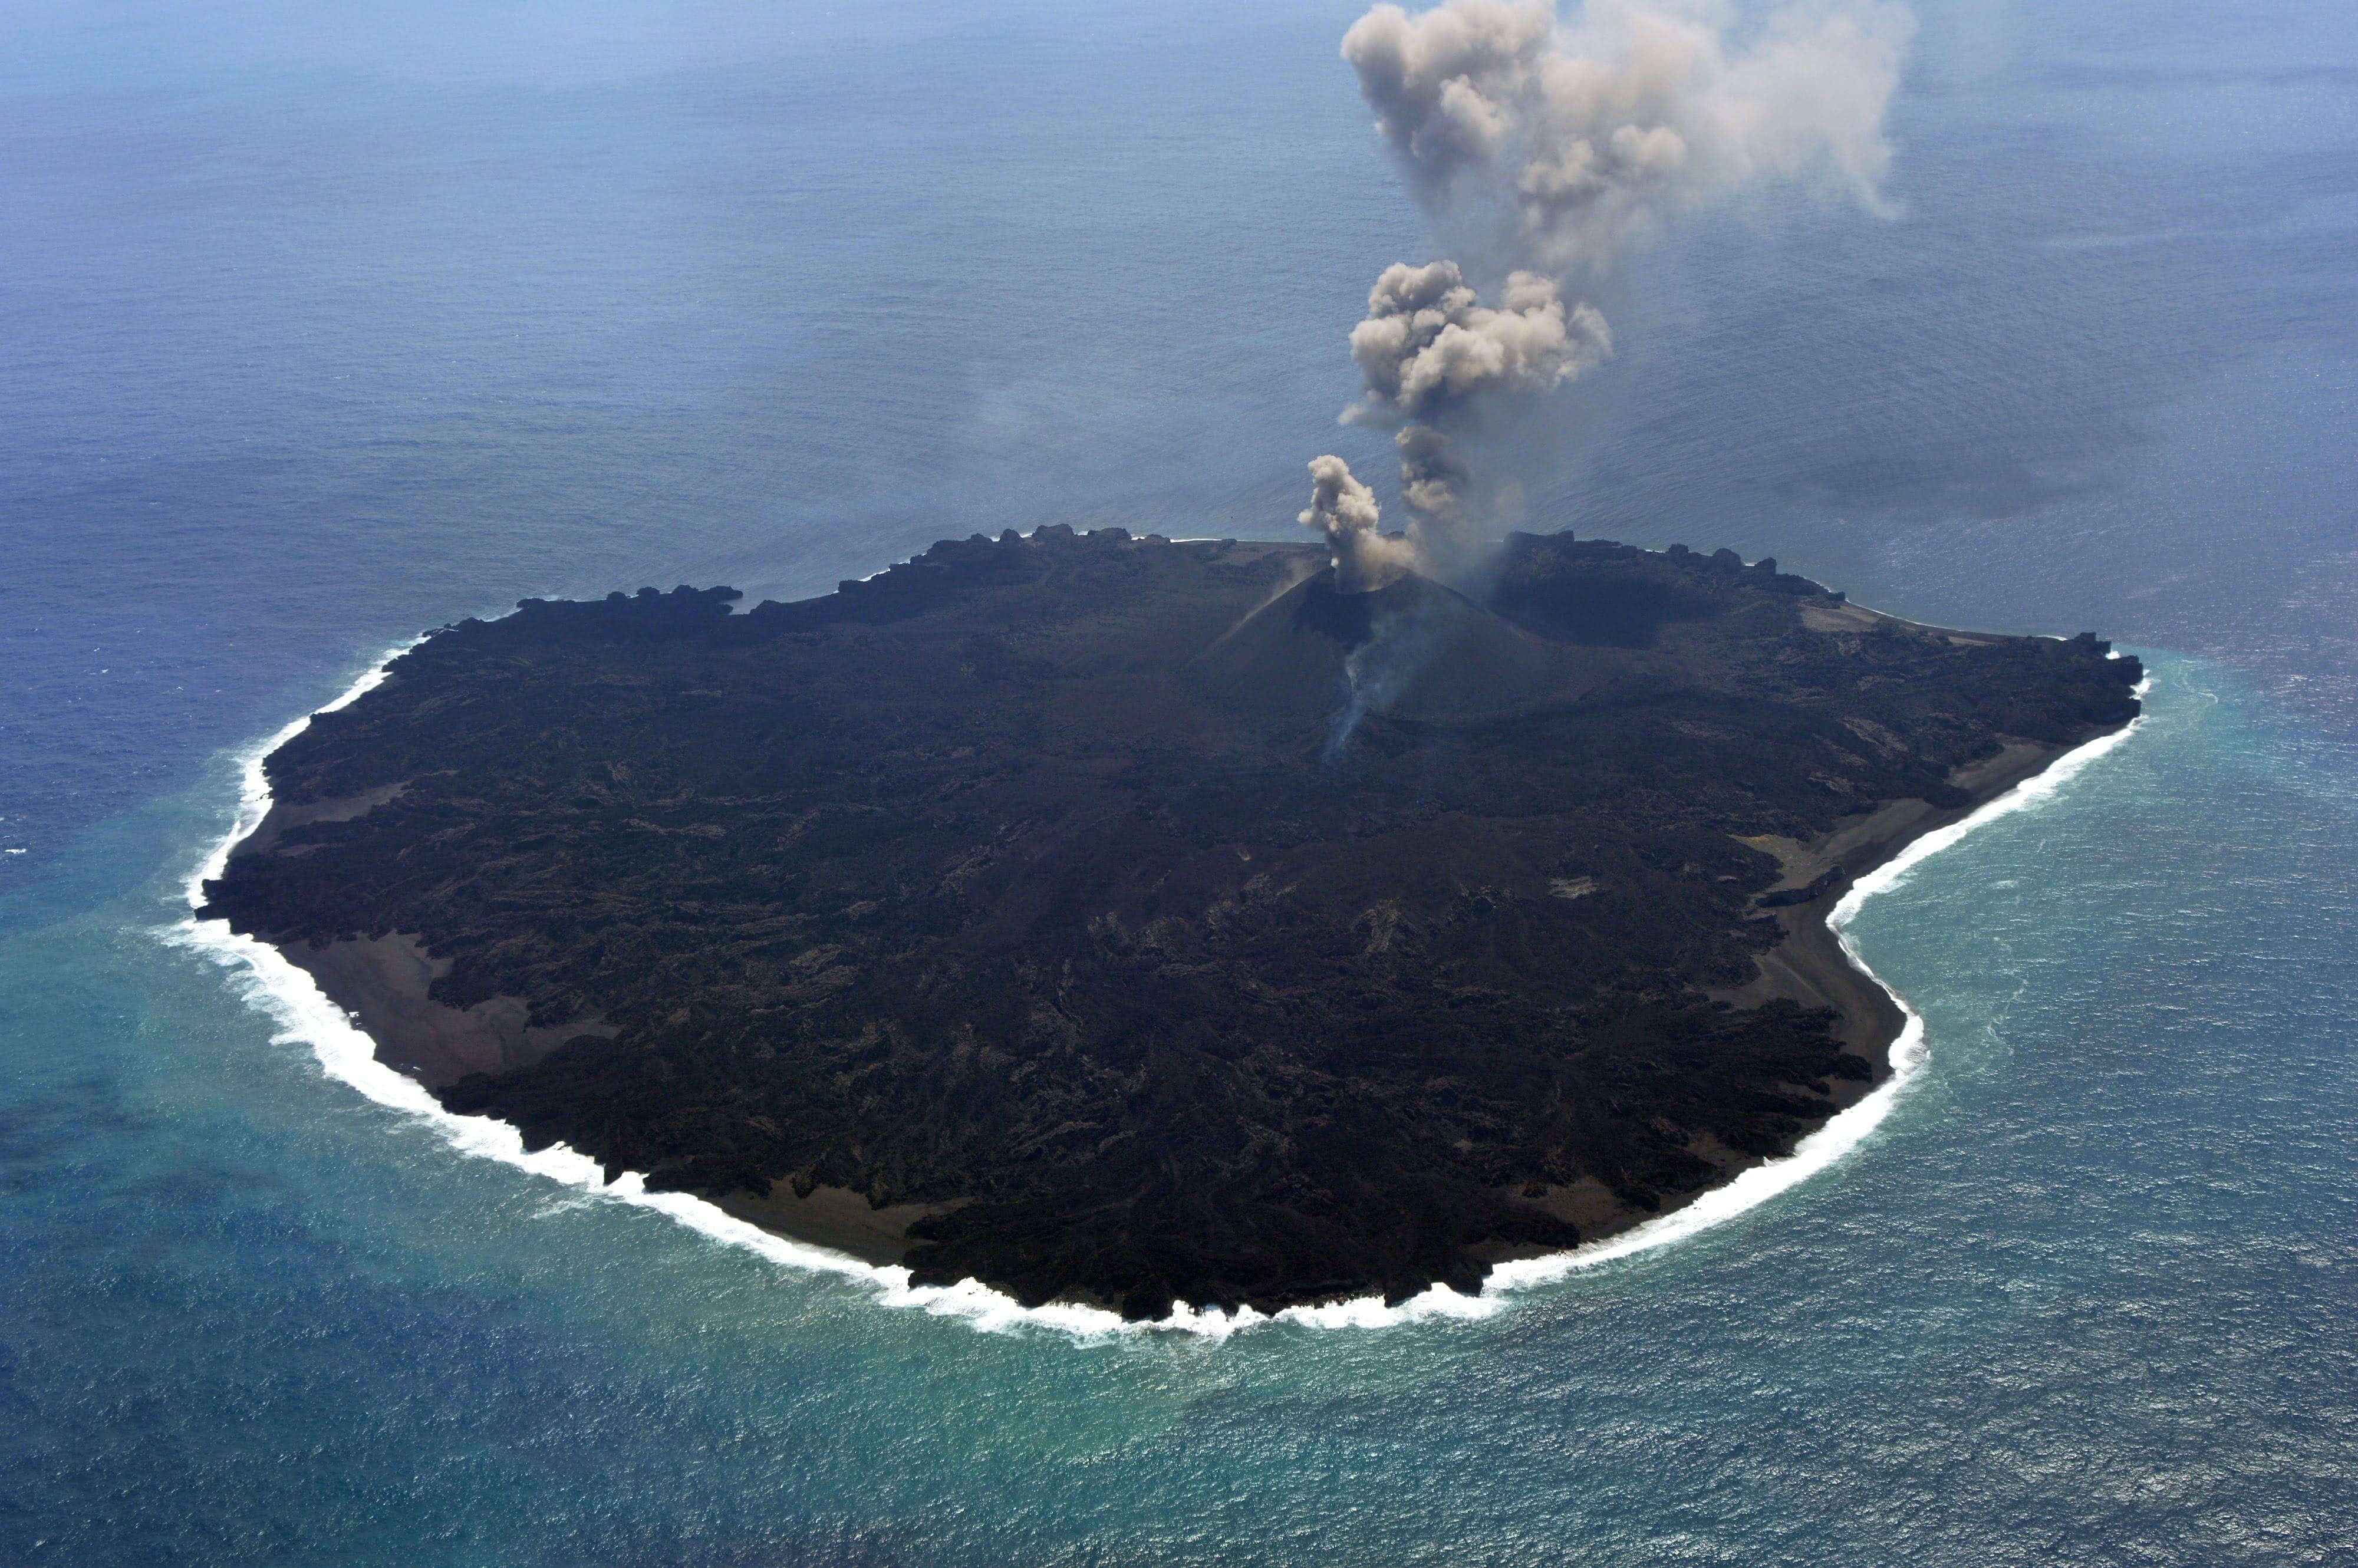 Volcano island. Остров Миякедзима, Япония. Вулканический остров Миякедзима. Адамс (подводный вулкан). Остров баррен.